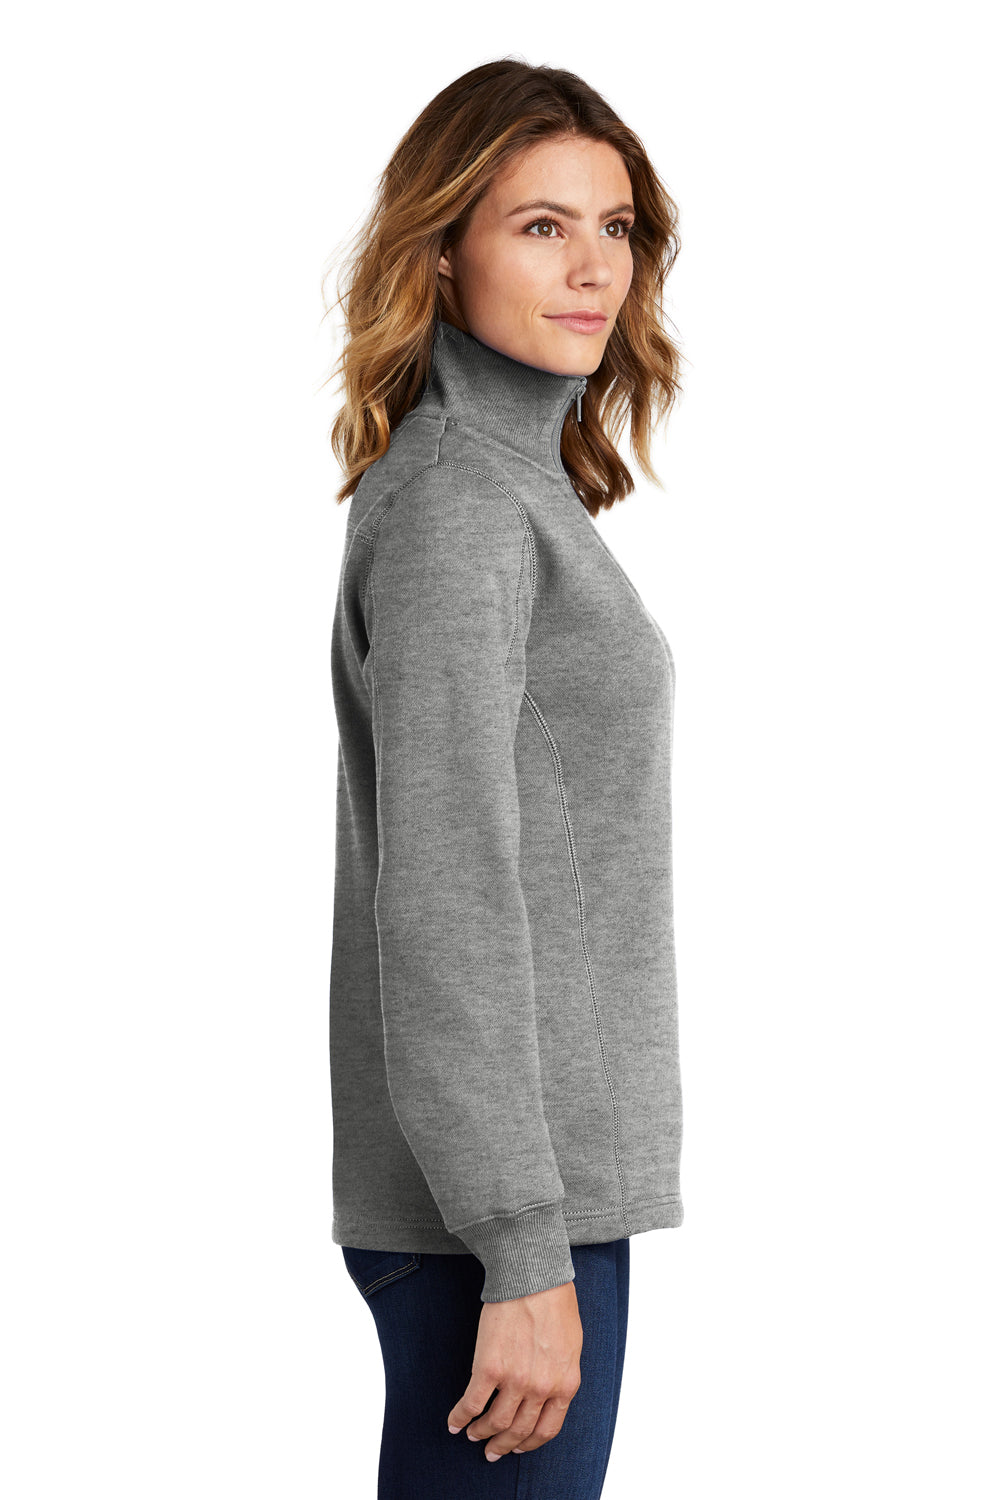 Sport-Tek LST254 Womens Fleece Hooded Sweatshirt Hoodie Heather Vintage Grey Side